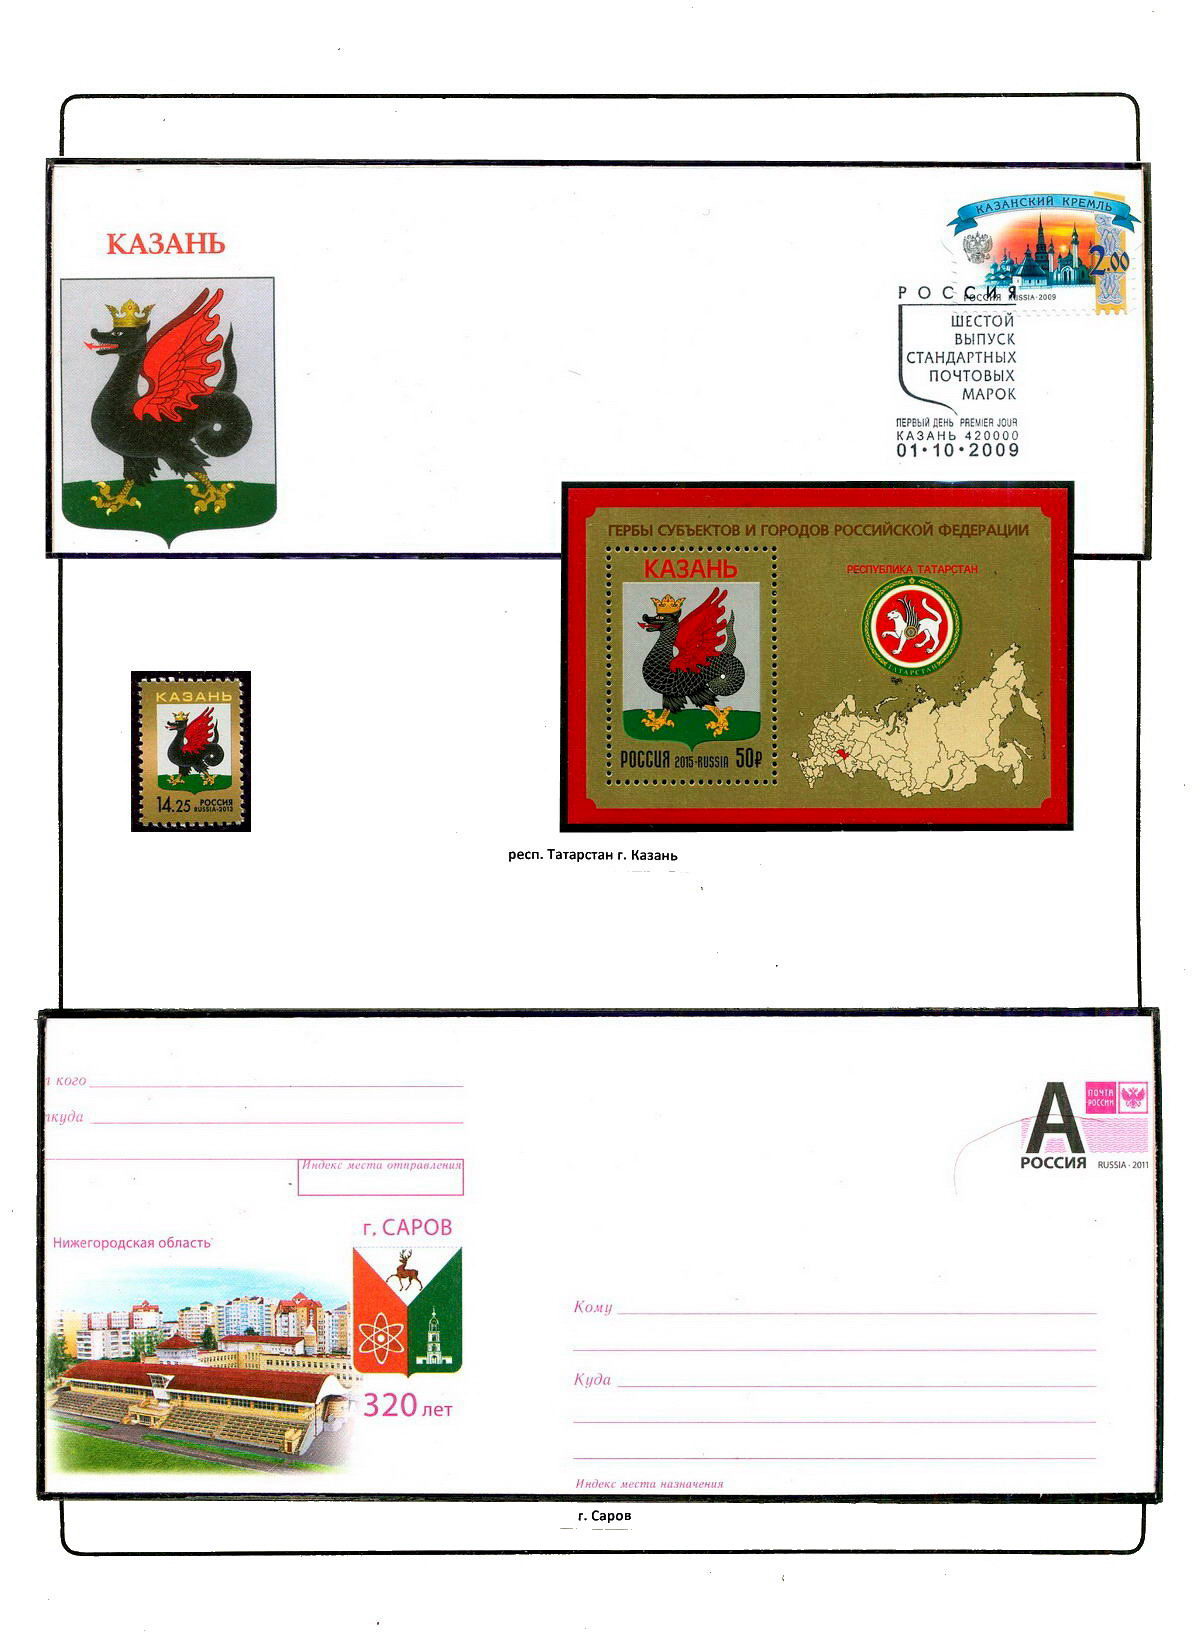 Гербы стран и городов на почтовых марках Винсюм Алмело Драхтен Геральдика в филателии